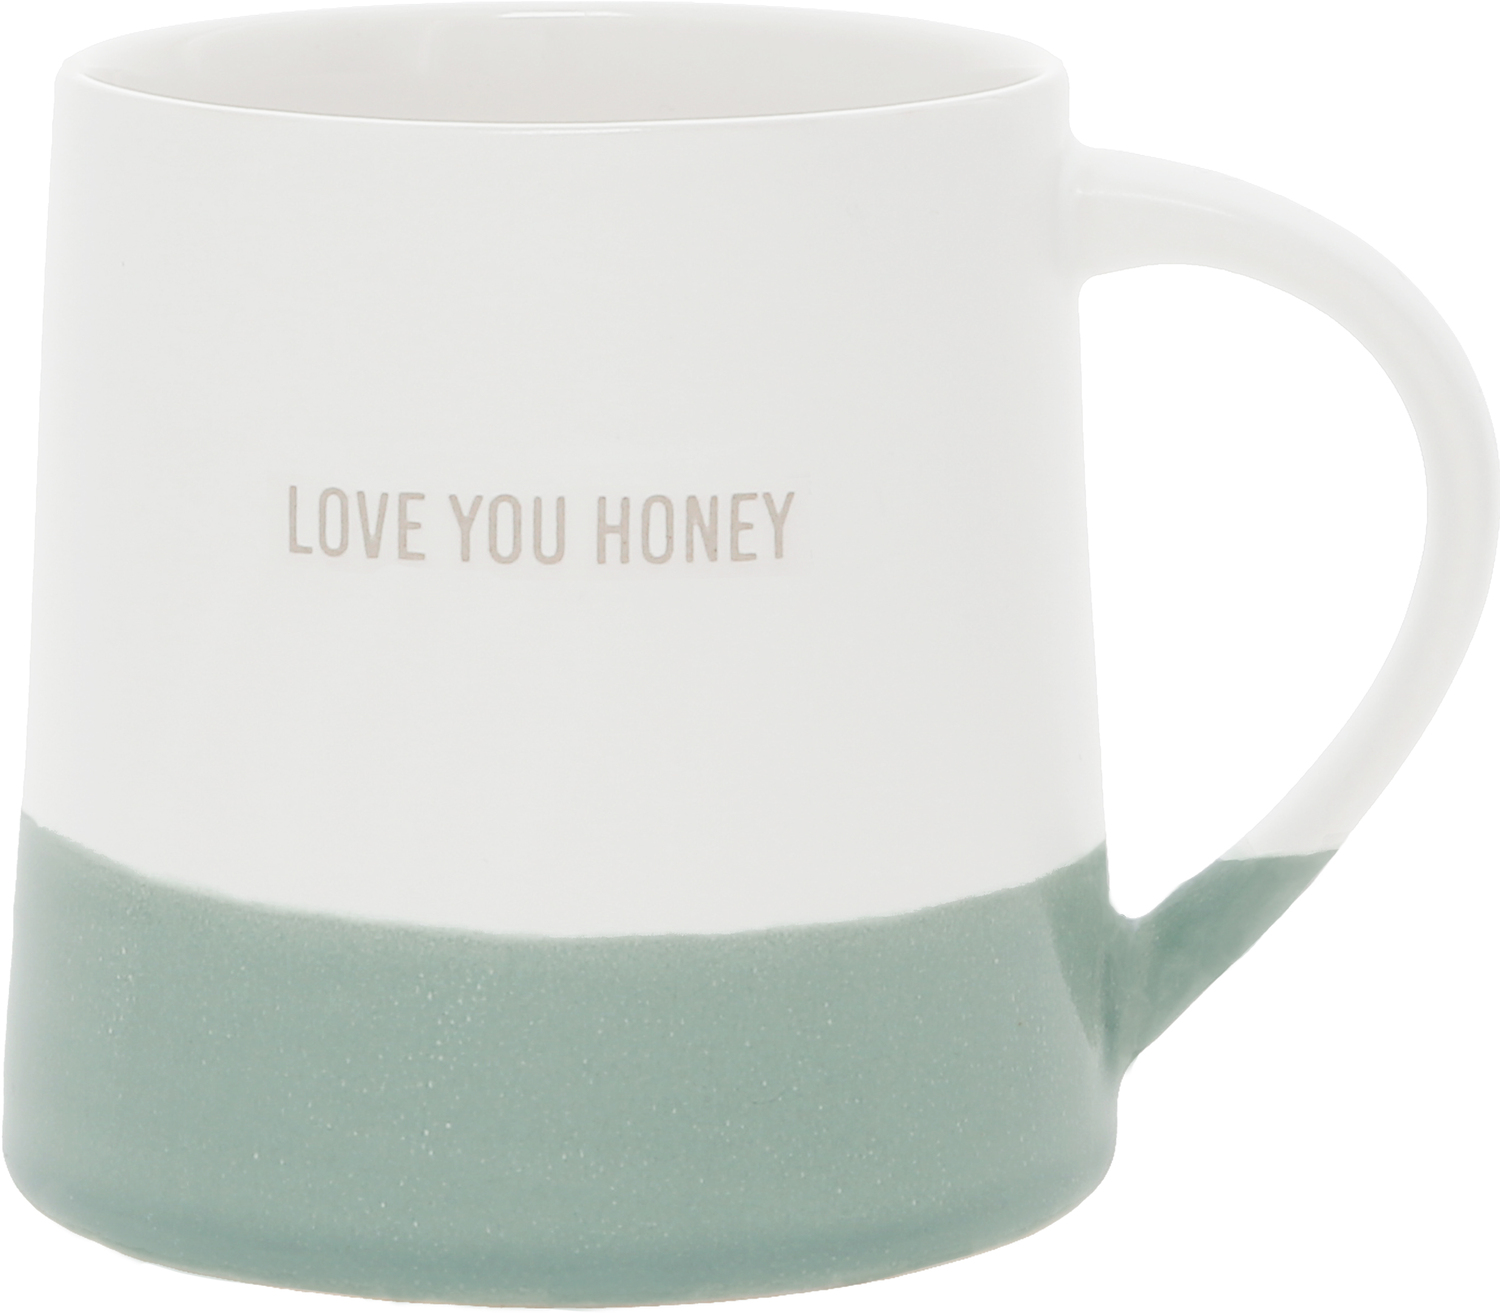 Love You Honey by Love You - Love You Honey - 17 oz Mug